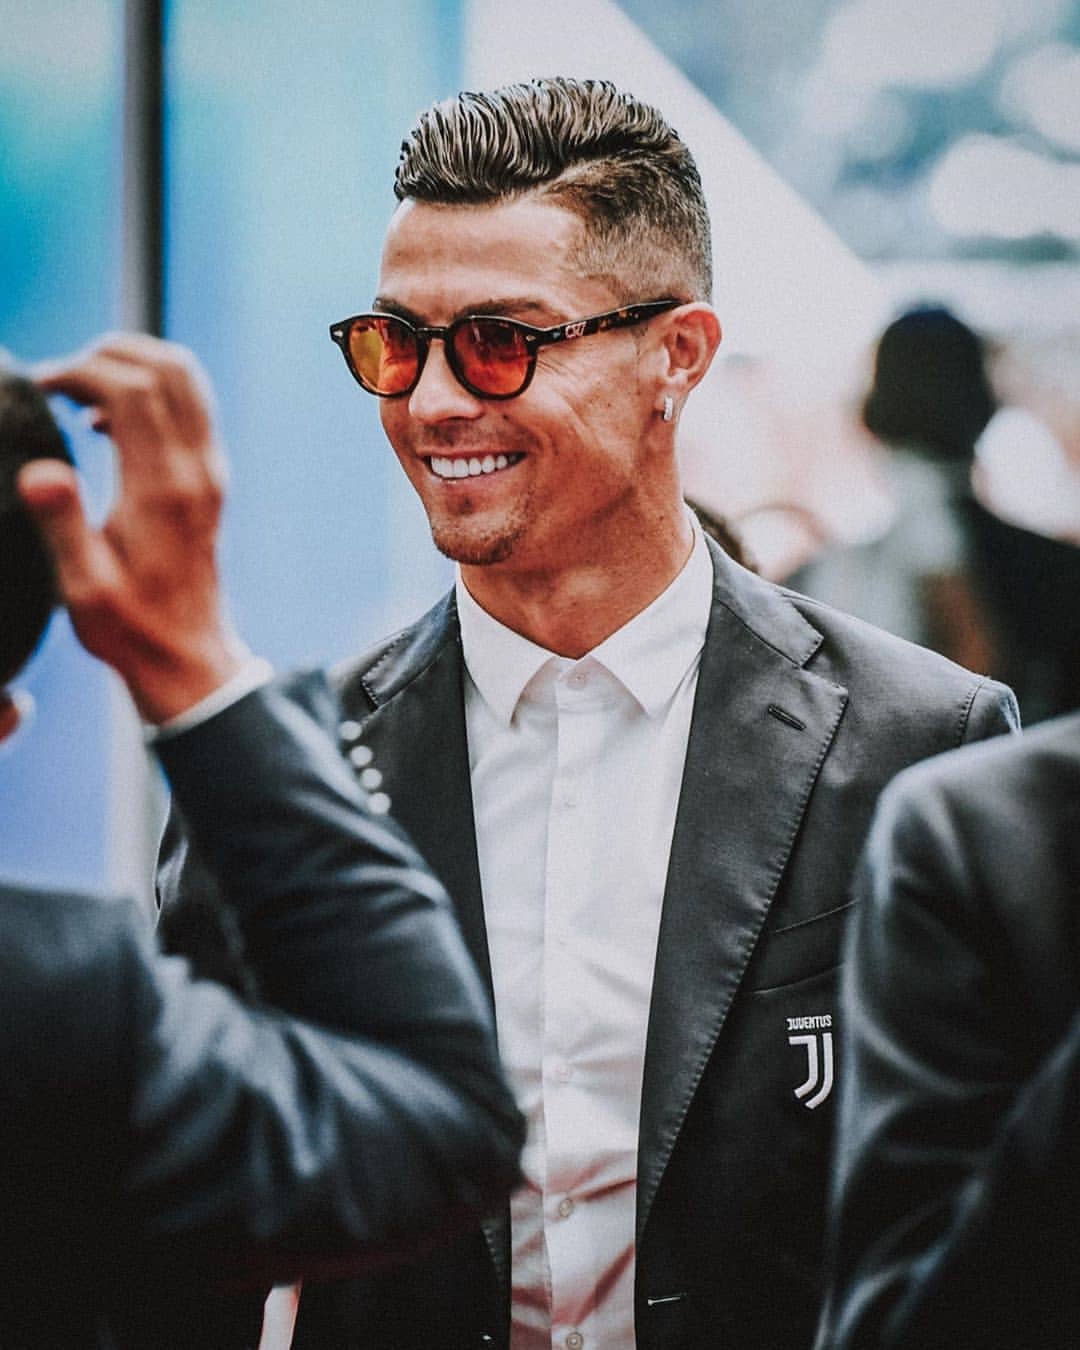 Cristiano Ronaldo: Quý khách là fan của bóng đá? Cristiano Ronaldo chính là một trong những cầu thủ nổi tiếng nhất thế giới hiện nay. Hãy xem hình ảnh liên quan đến Ronaldo để được tham gia vào thế giới bóng đá đầy thú vị của anh ấy.